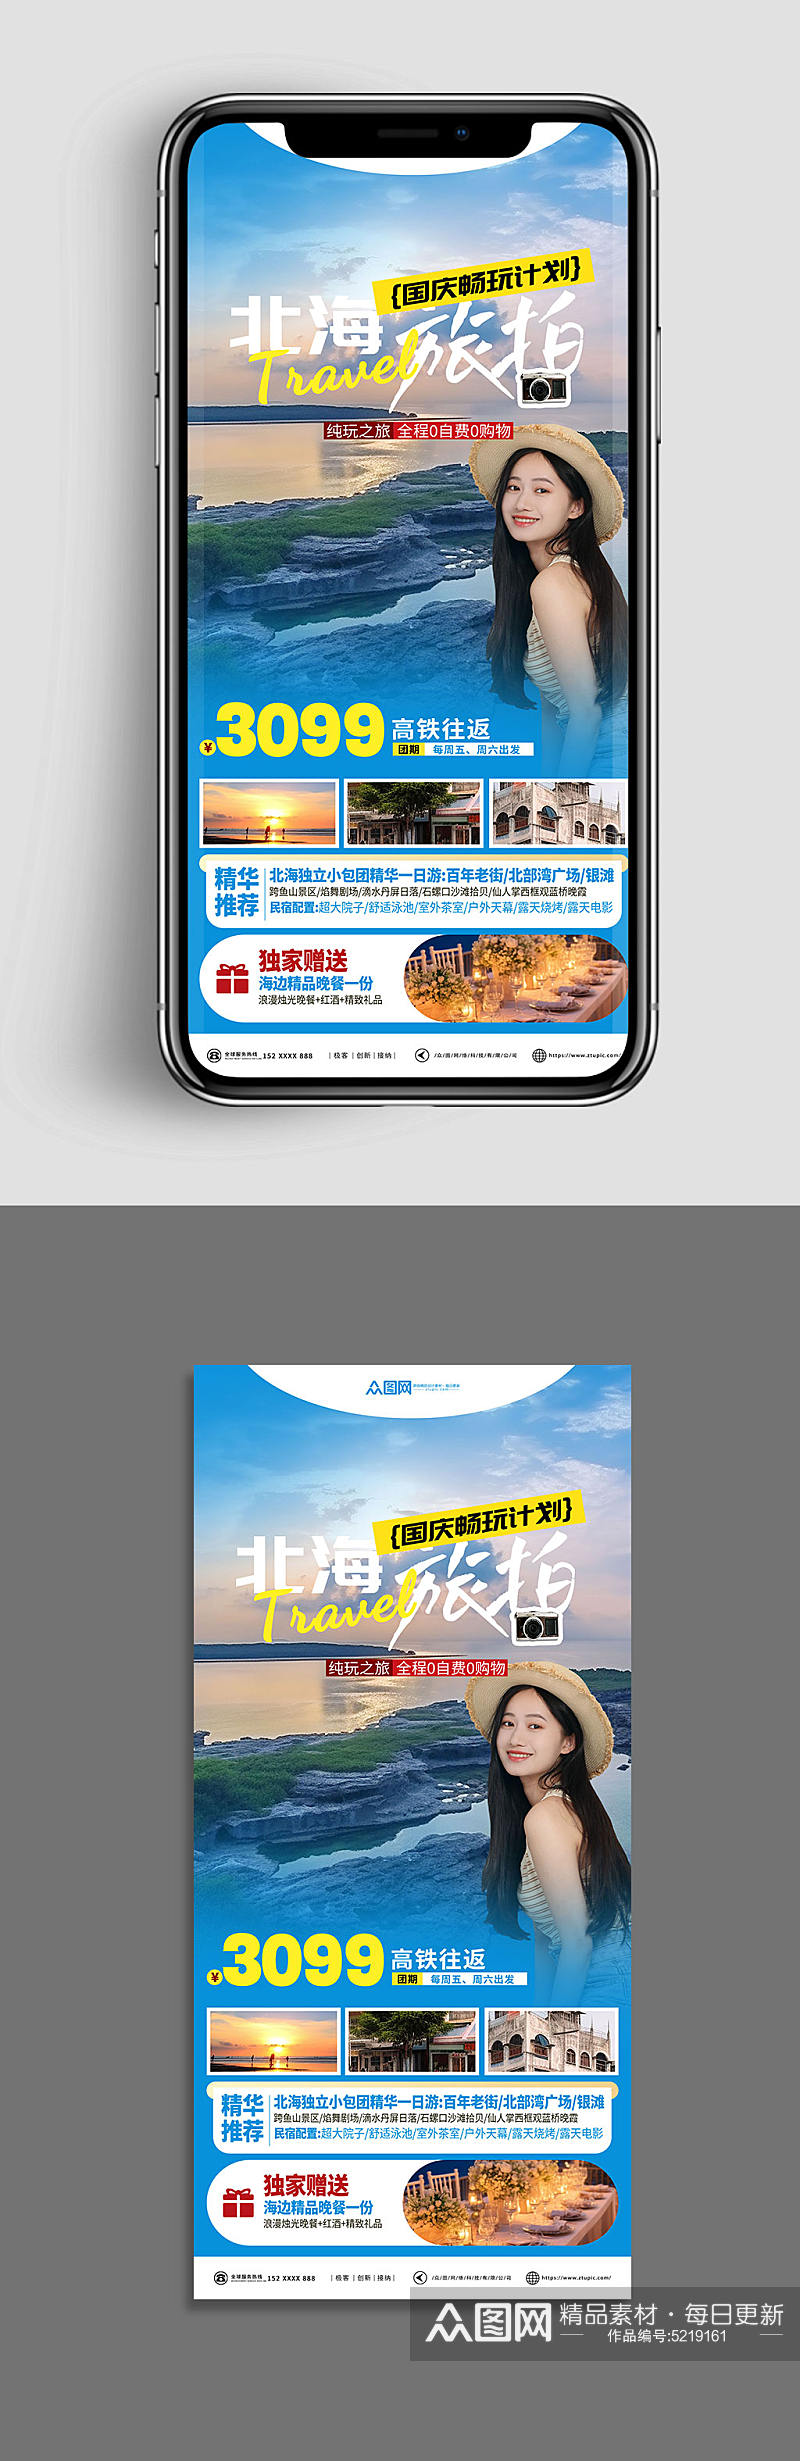 国庆节旅游出行旅行社宣传刷屏海报素材